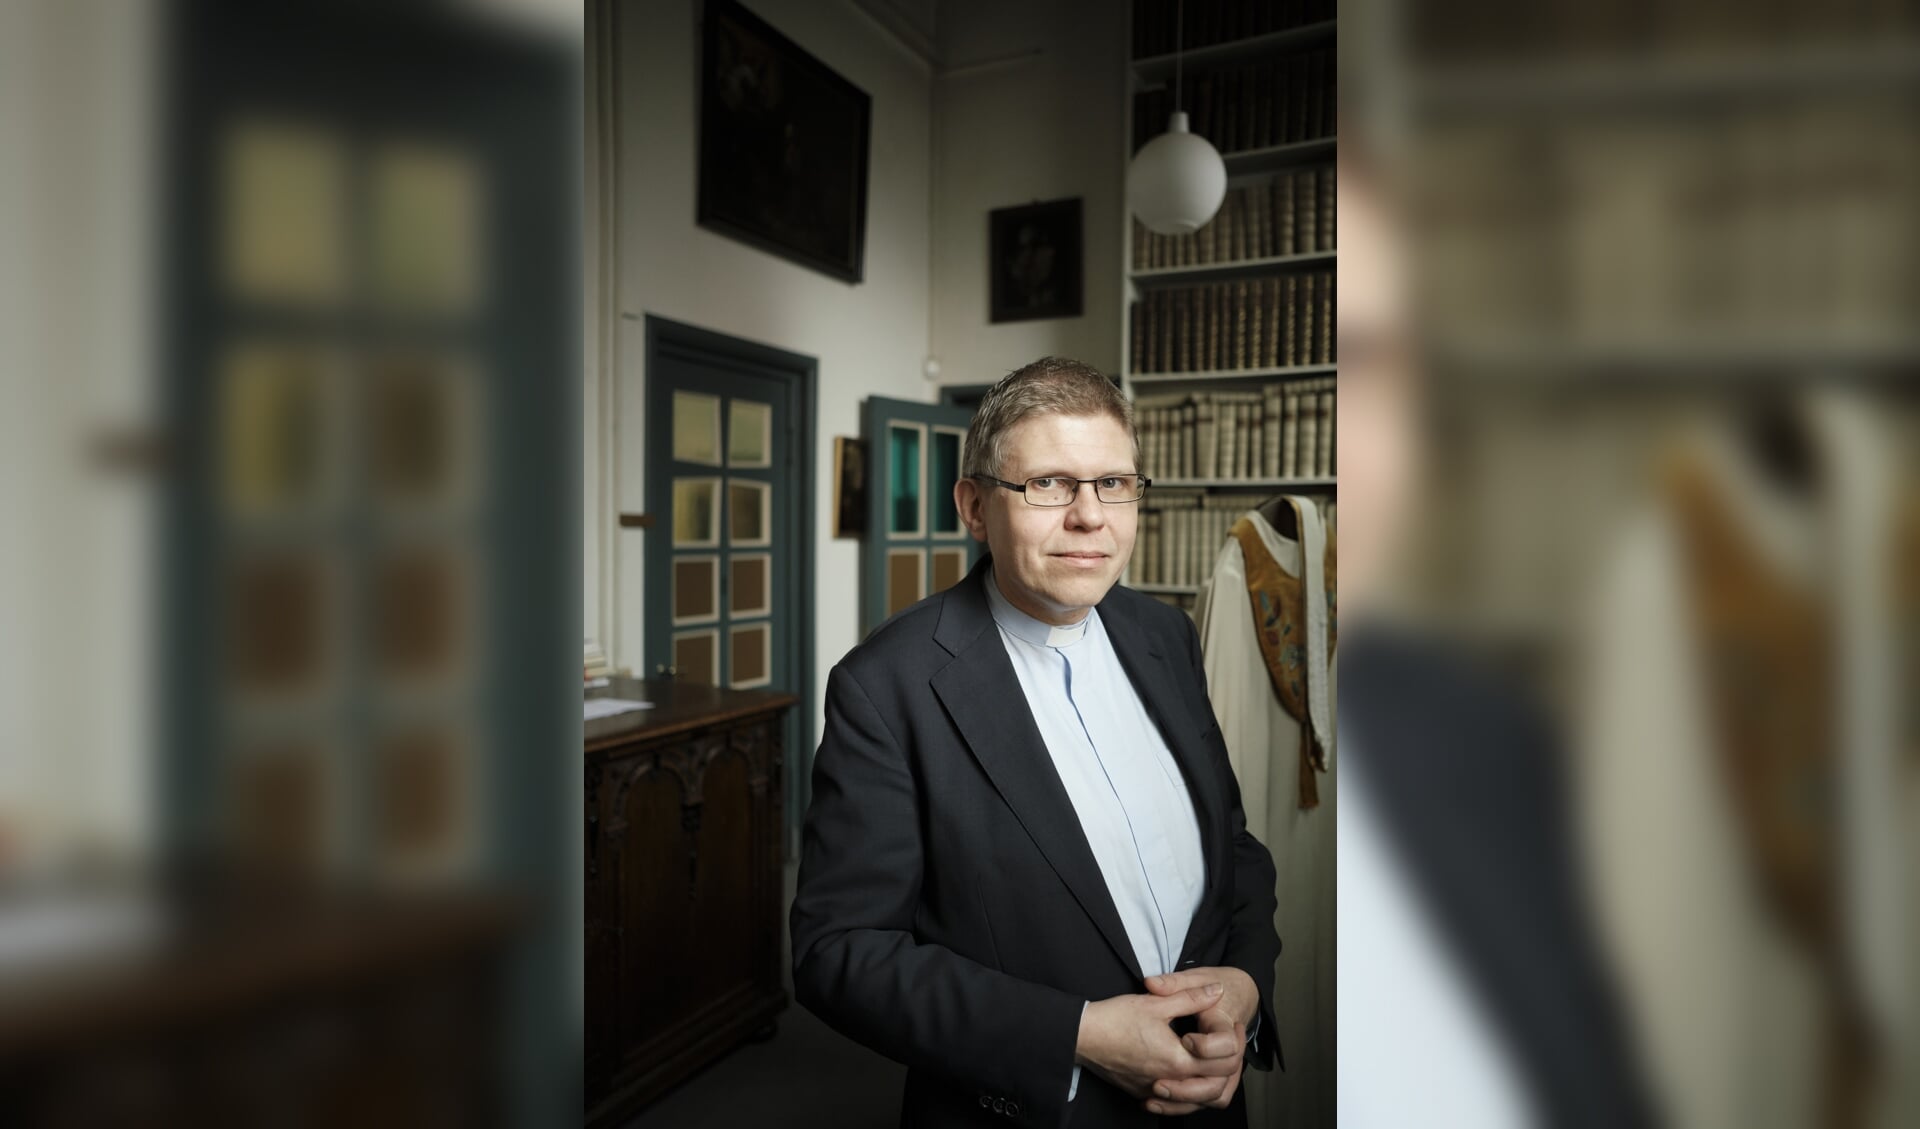 Bernd Wallet is op 15 februari 2020 verkozen tot aartsbisschop van de Oud-Katholieke Kerk in Nederland.